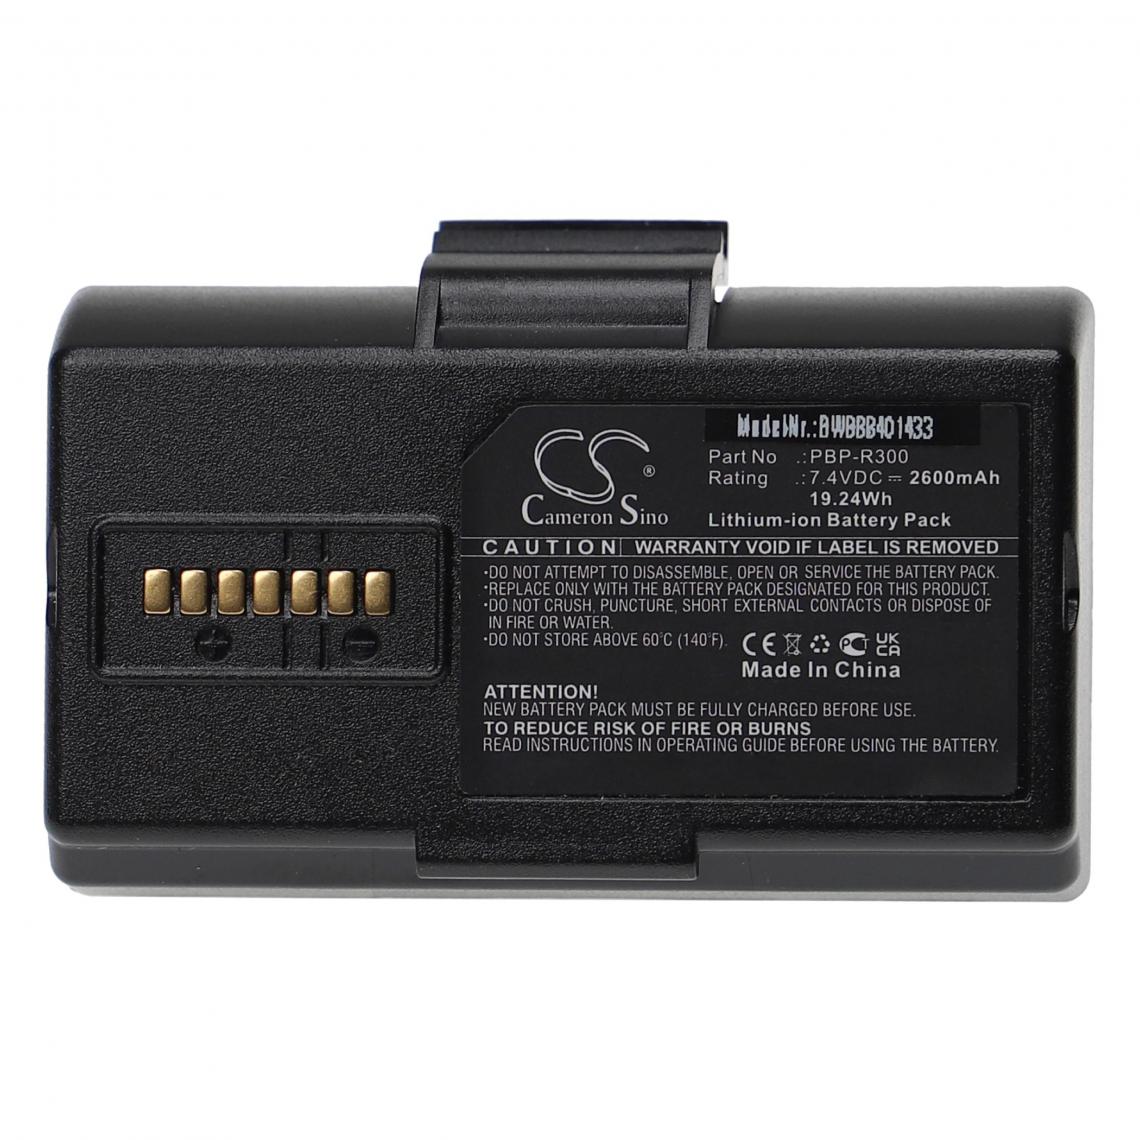 Vhbw - vhbw Batterie compatible avec Bixolon SPP-R300, SPP-R310 imprimante, scanner, imprimante d'étiquettes (2600mAh, 7,4V, Li-ion) - Imprimante Jet d'encre